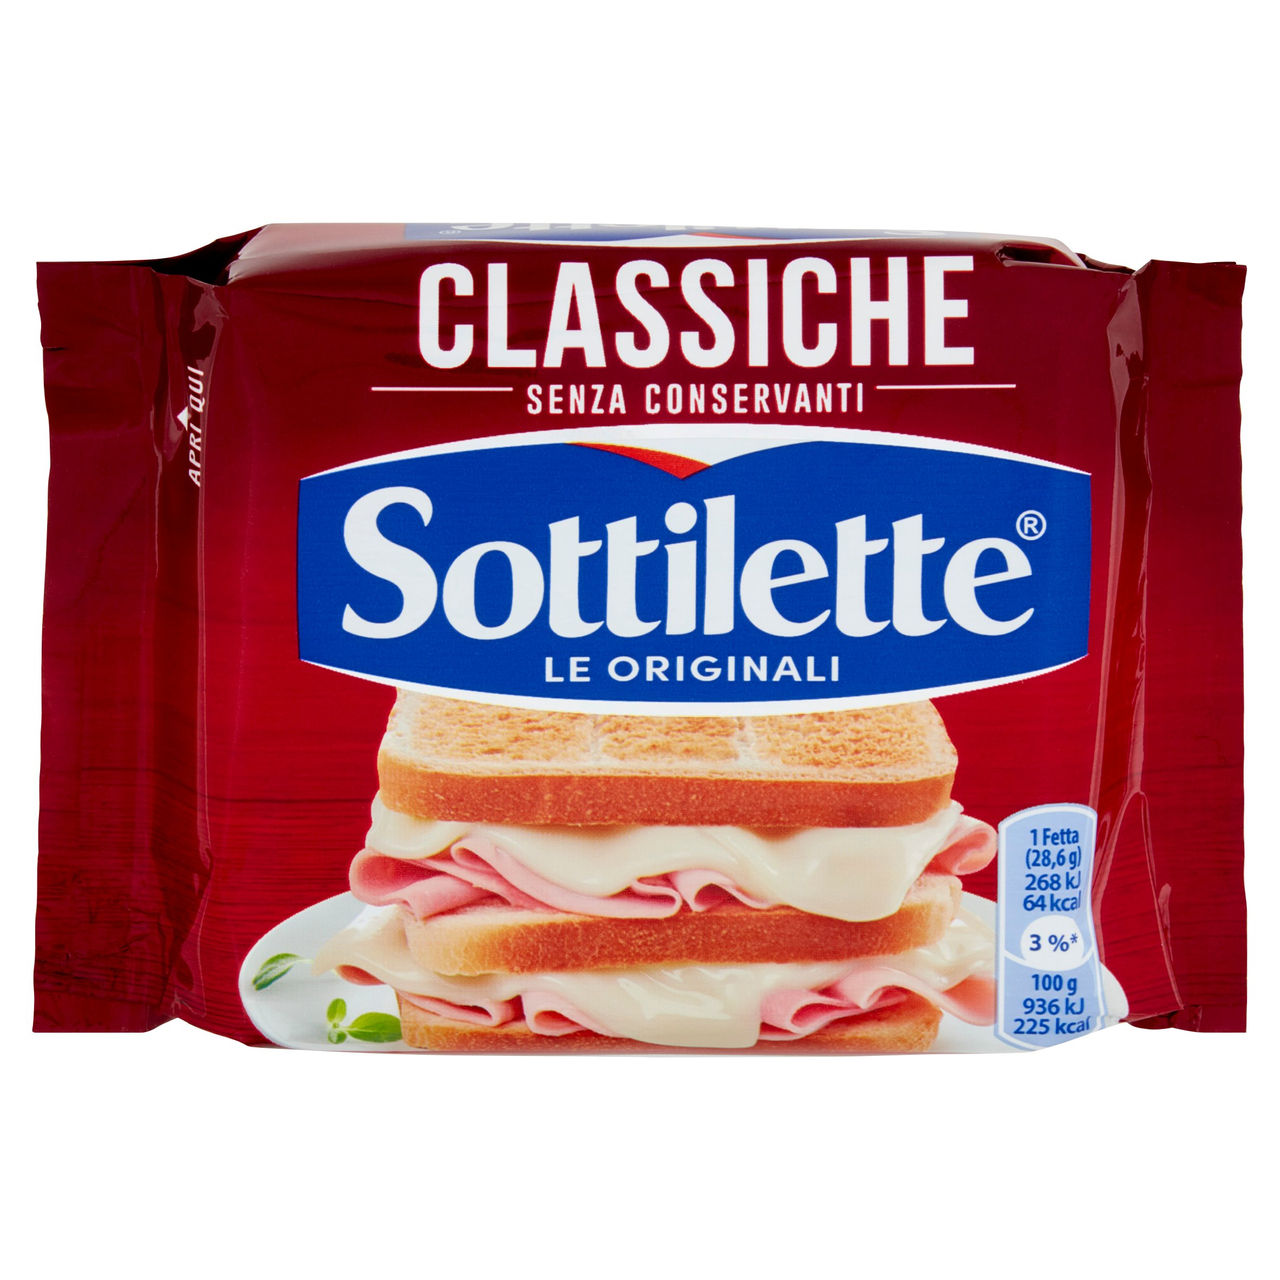 Sottilette Classiche 200 g in vendita online